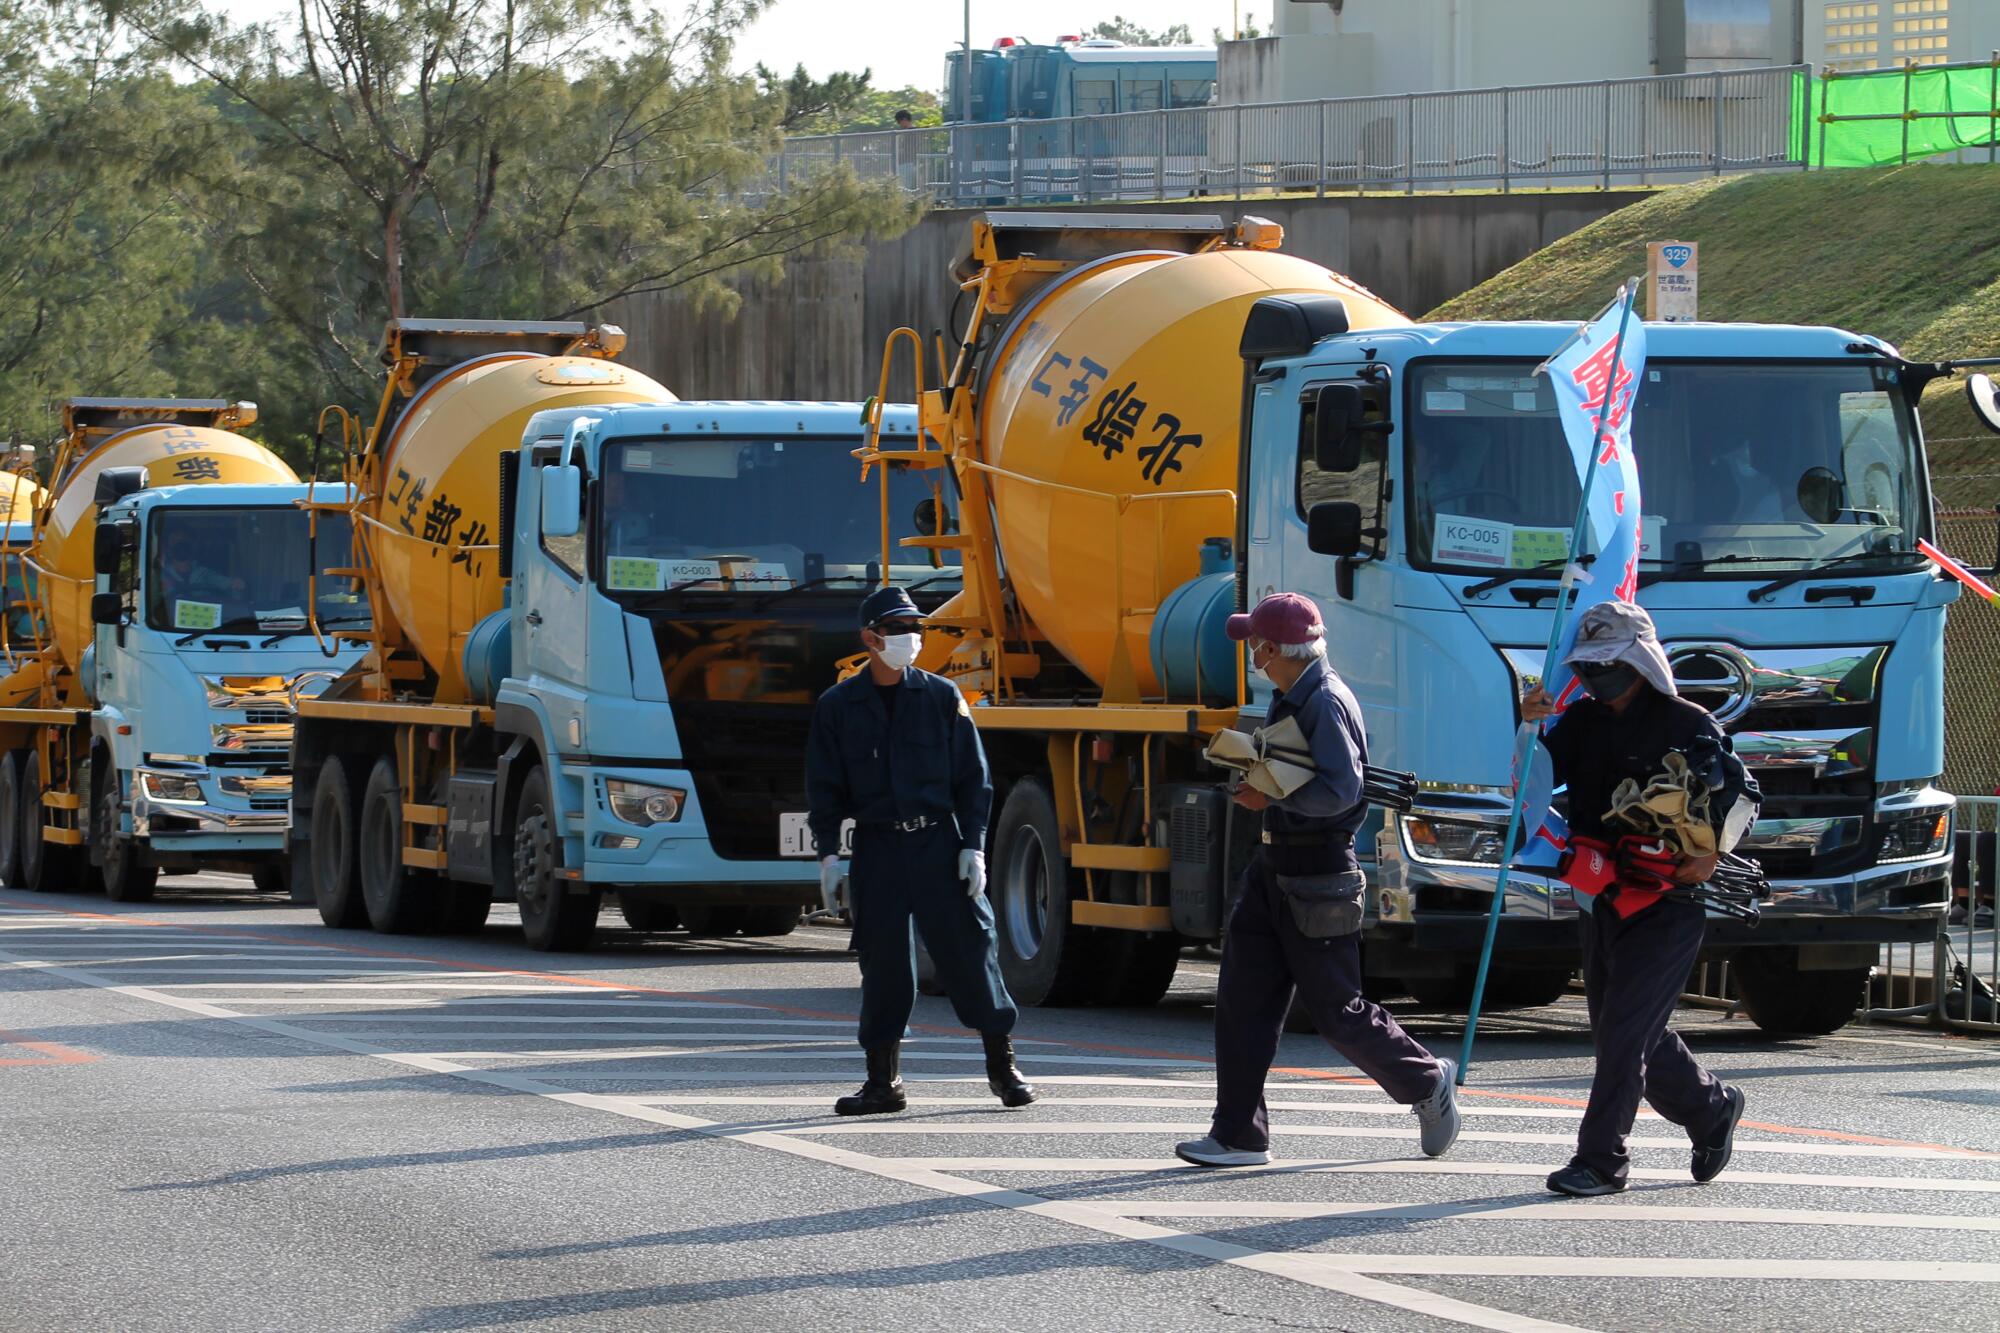 Цементовозы выстраиваются в очередь, пока протестующие преграждают им путь на японском острове Окинава.